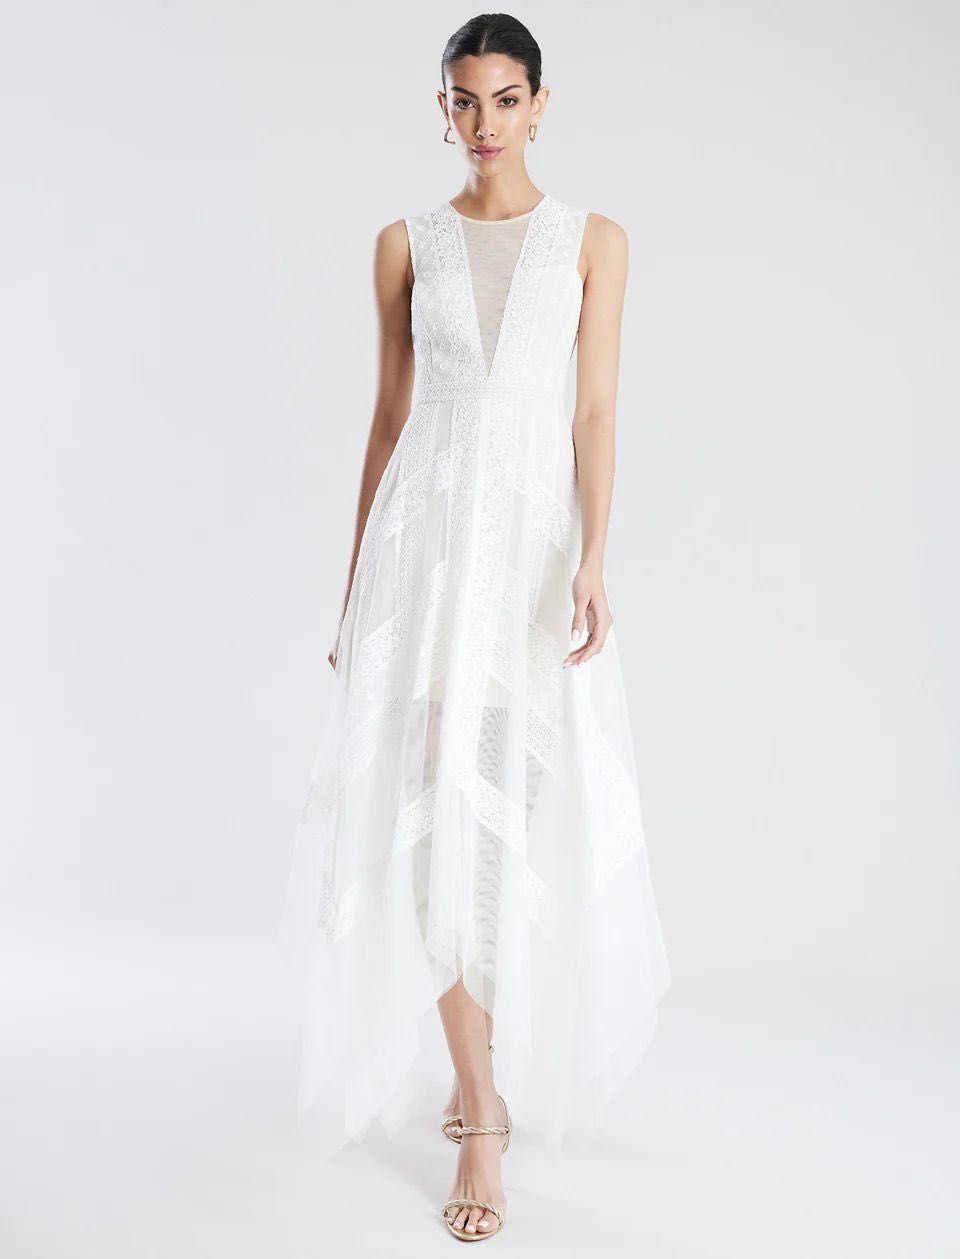 Фірмові весільні вечірні сукні  білого кольору, випускні плаття